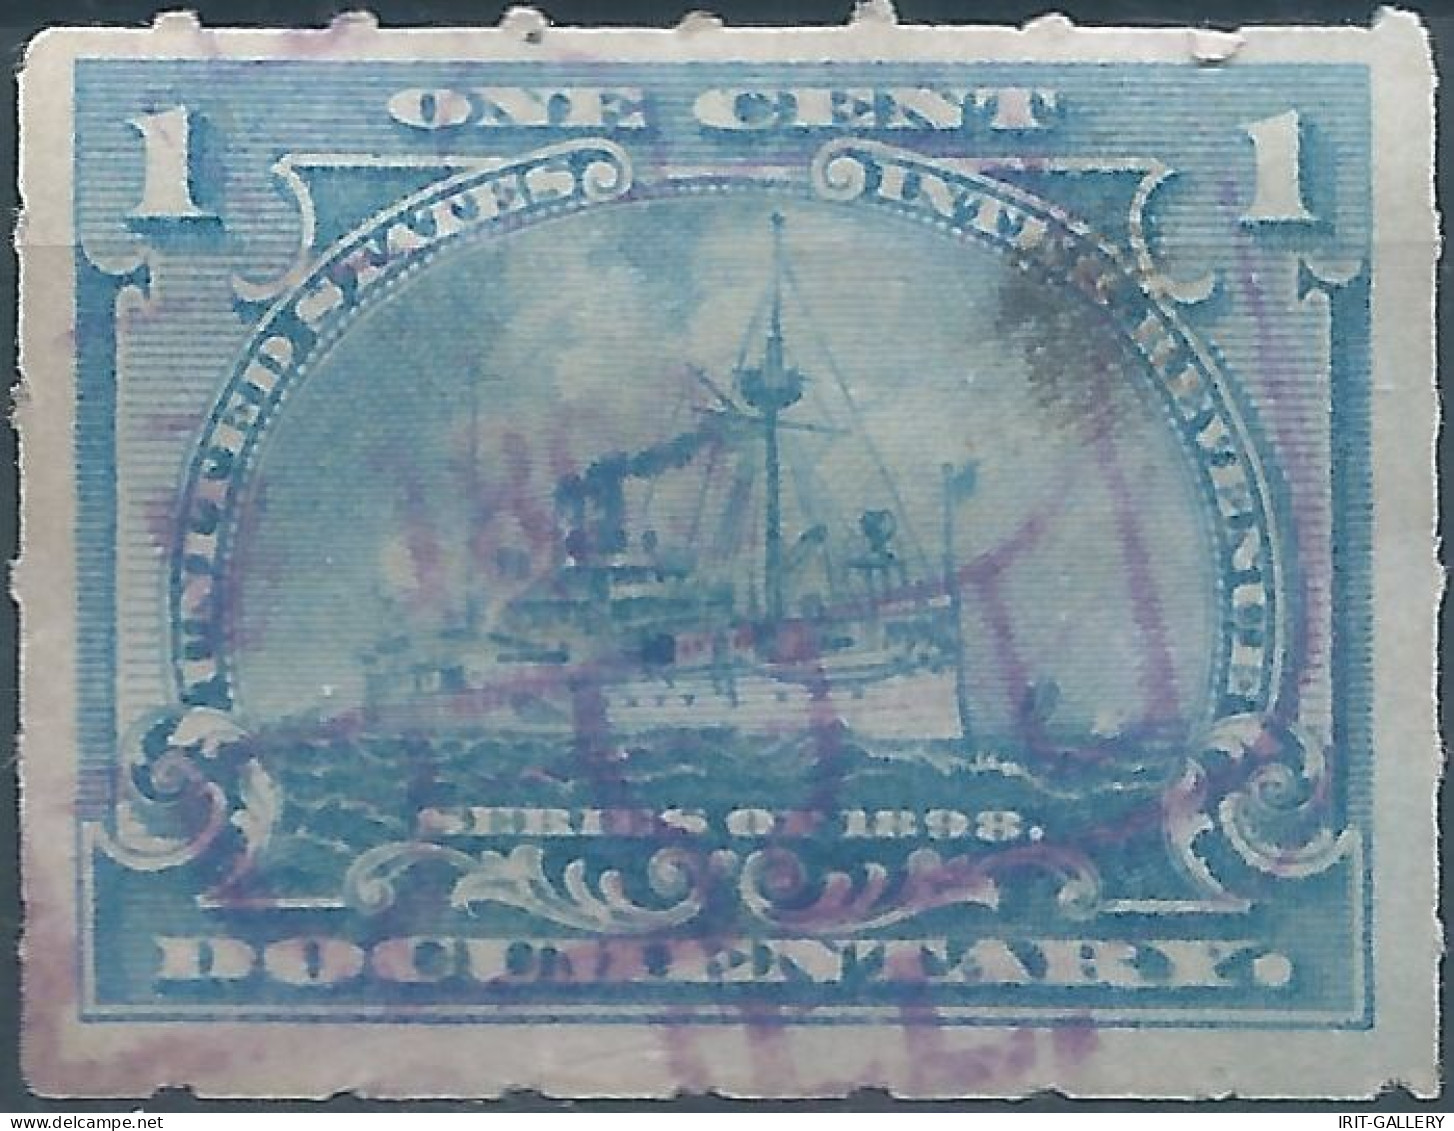 Stati Uniti D'america,United States,U.S.A,1898 Revenue Stamps Internal DOCUMENTARY,1cent,Used - Fiscaux